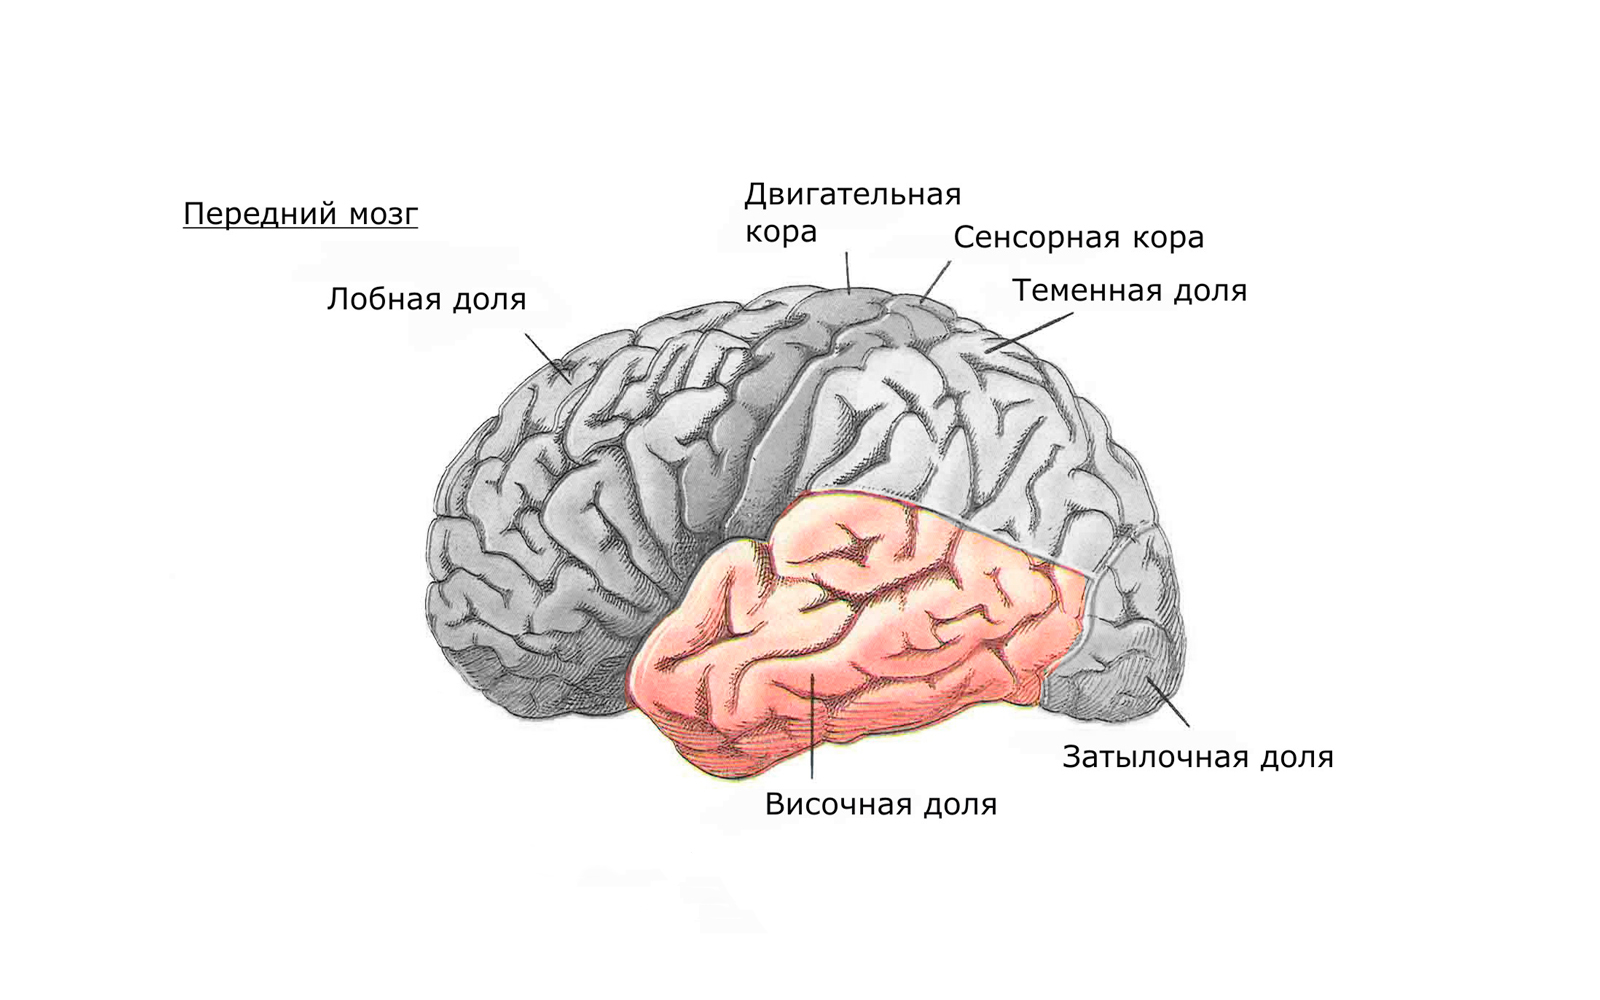 Задние доли мозга. Строение височной доли мозга человека. Функции височной доли головного мозга. Лобная теменная височная затылочная доли.